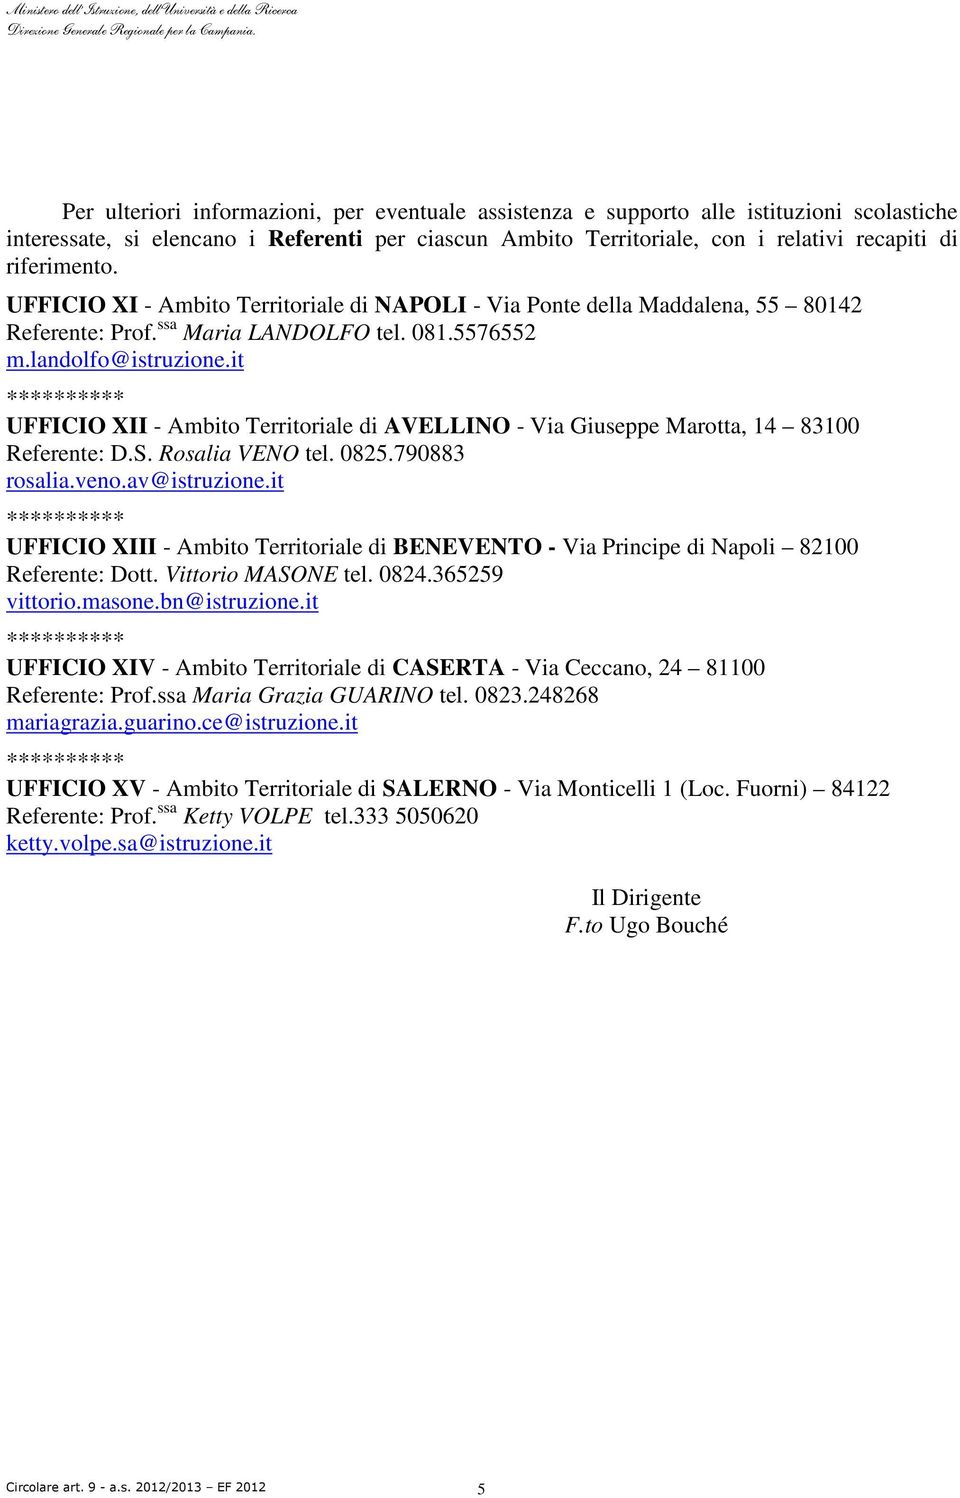 it UFFICIO XII - Ambito Territoriale di AVELLINO - Via Giuseppe Marotta, 14 83100 Referente: D.S. Rosalia VENO tel. 0825.790883 rosalia.veno.av@istruzione.